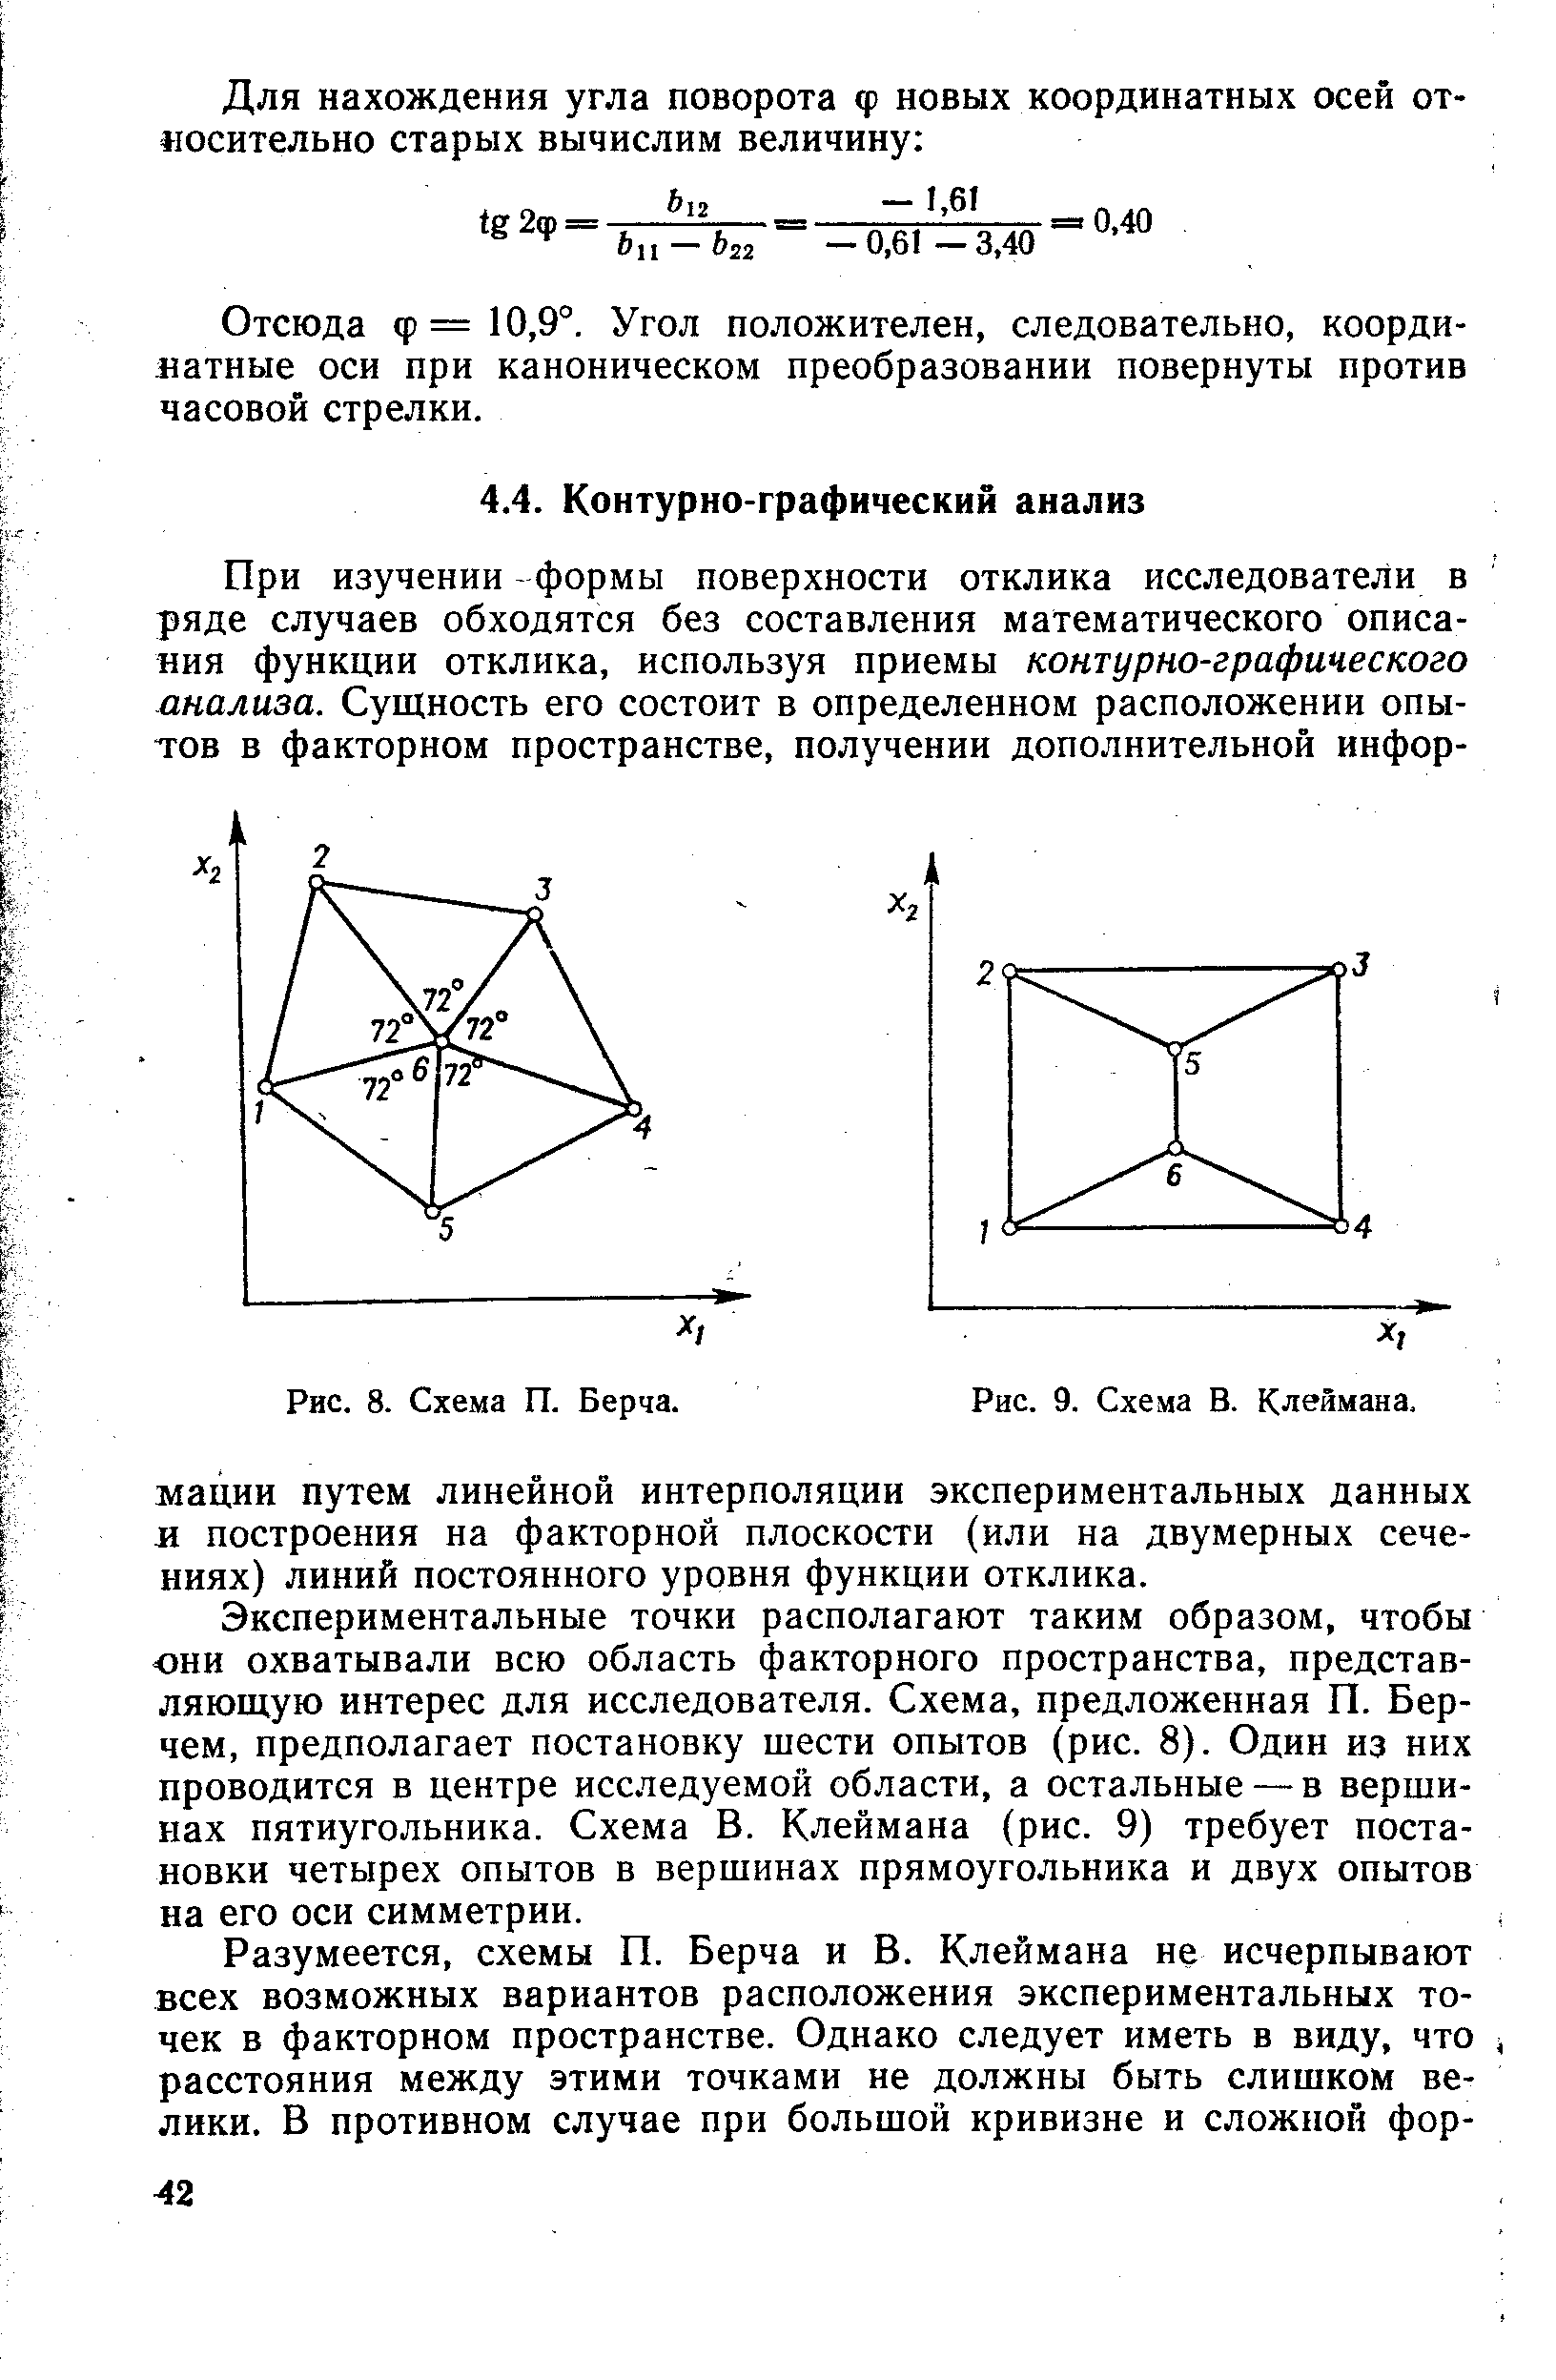 Экспериментальные точки располагают таким образом, чтобы они охватывали всю область факторного пространства, представляющую интерес для исследователя. Схема, предложенная П. Берчем, предполагает постановку шести опытов (рис. 8). Один из них проводится в центре исследуемой области, а остальные —в вершинах пятиугольника. Схема В. Клеймана (рис. 9) требует постановки четырех опытов в вершинах прямоугольника и двух опытов на его оси симметрии.